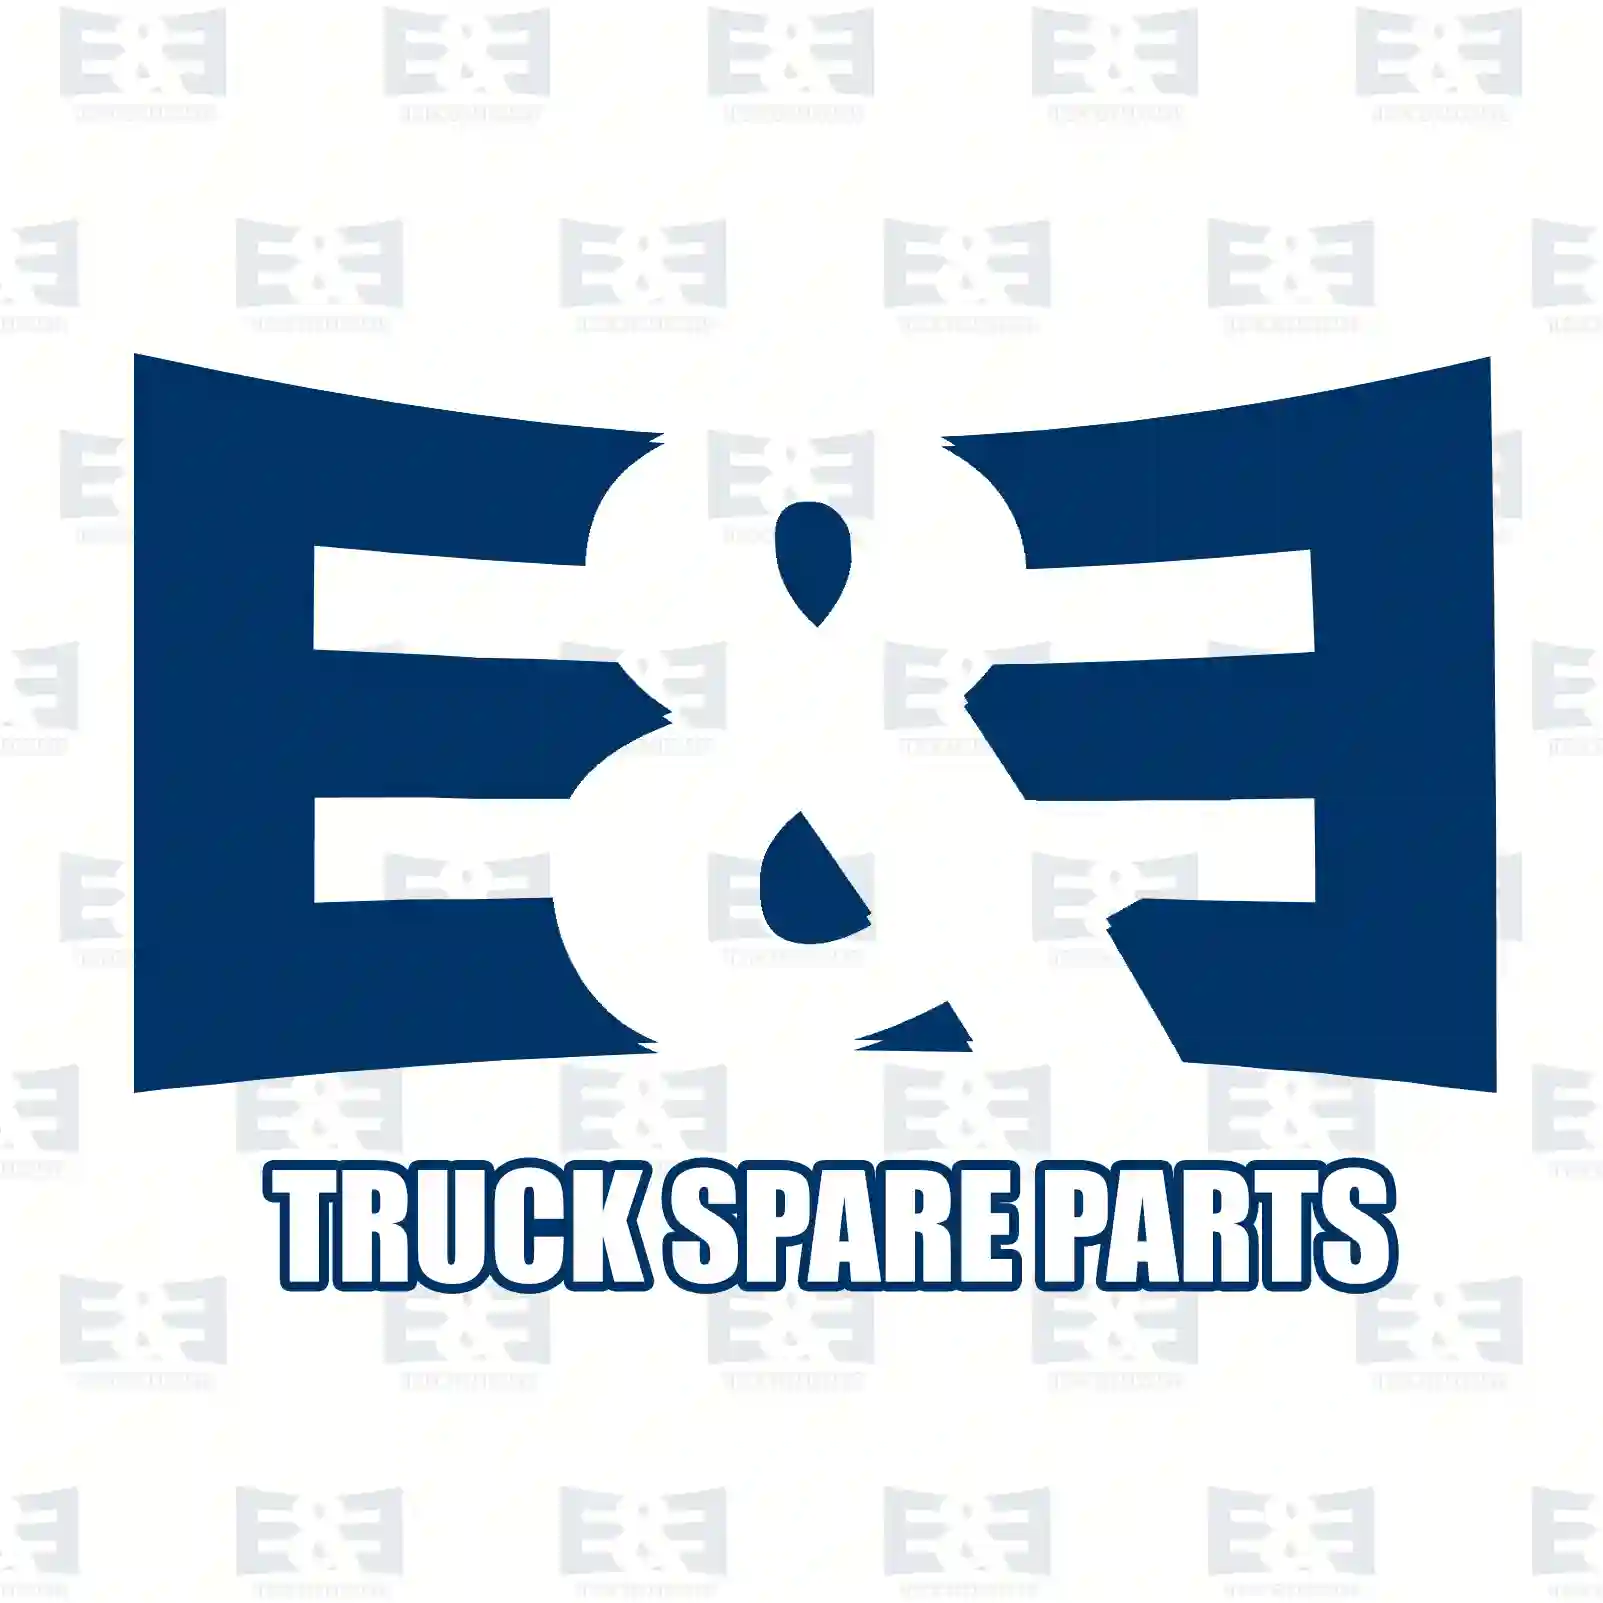 Brake shield, 2E2295491, 21221567-8, ||  2E2295491 E&E Truck Spare Parts | Truck Spare Parts, Auotomotive Spare Parts Brake shield, 2E2295491, 21221567-8, ||  2E2295491 E&E Truck Spare Parts | Truck Spare Parts, Auotomotive Spare Parts